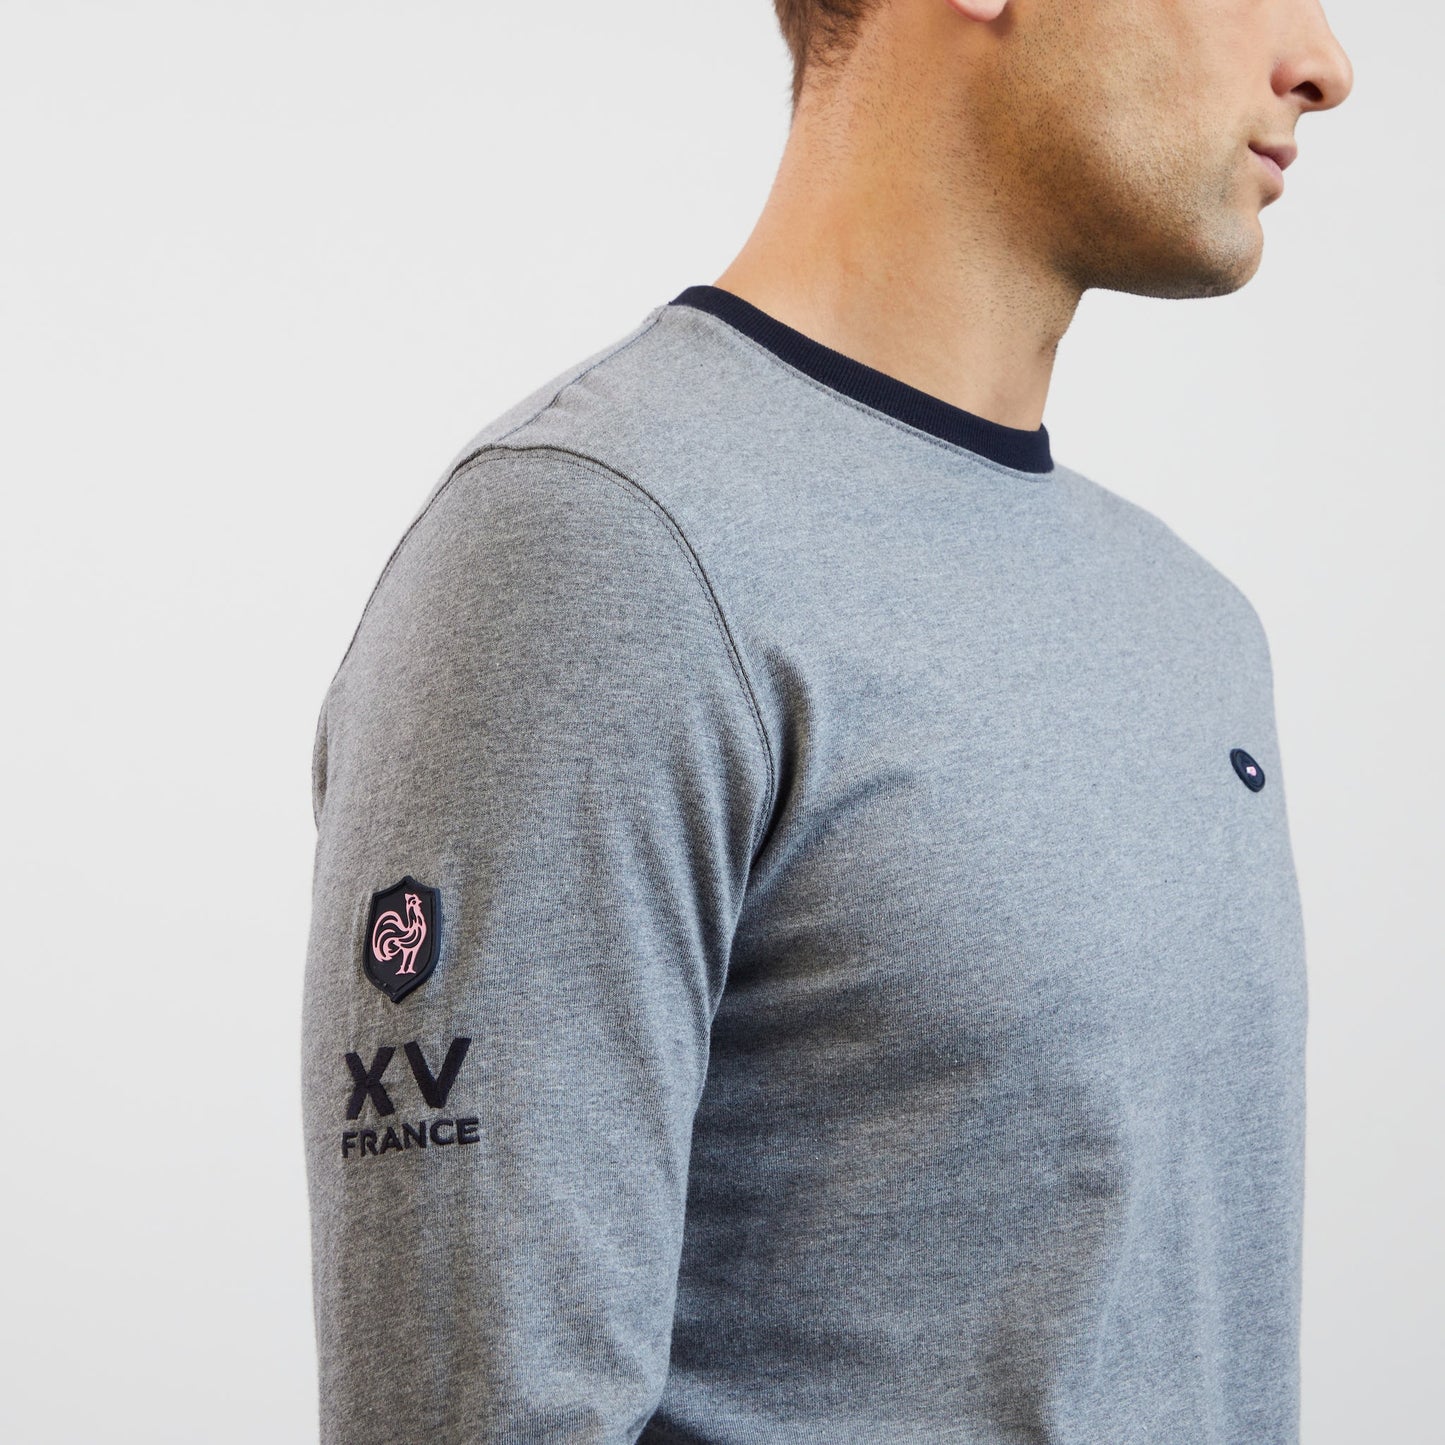 T-shirt gris manches longues détails broderies XV de France